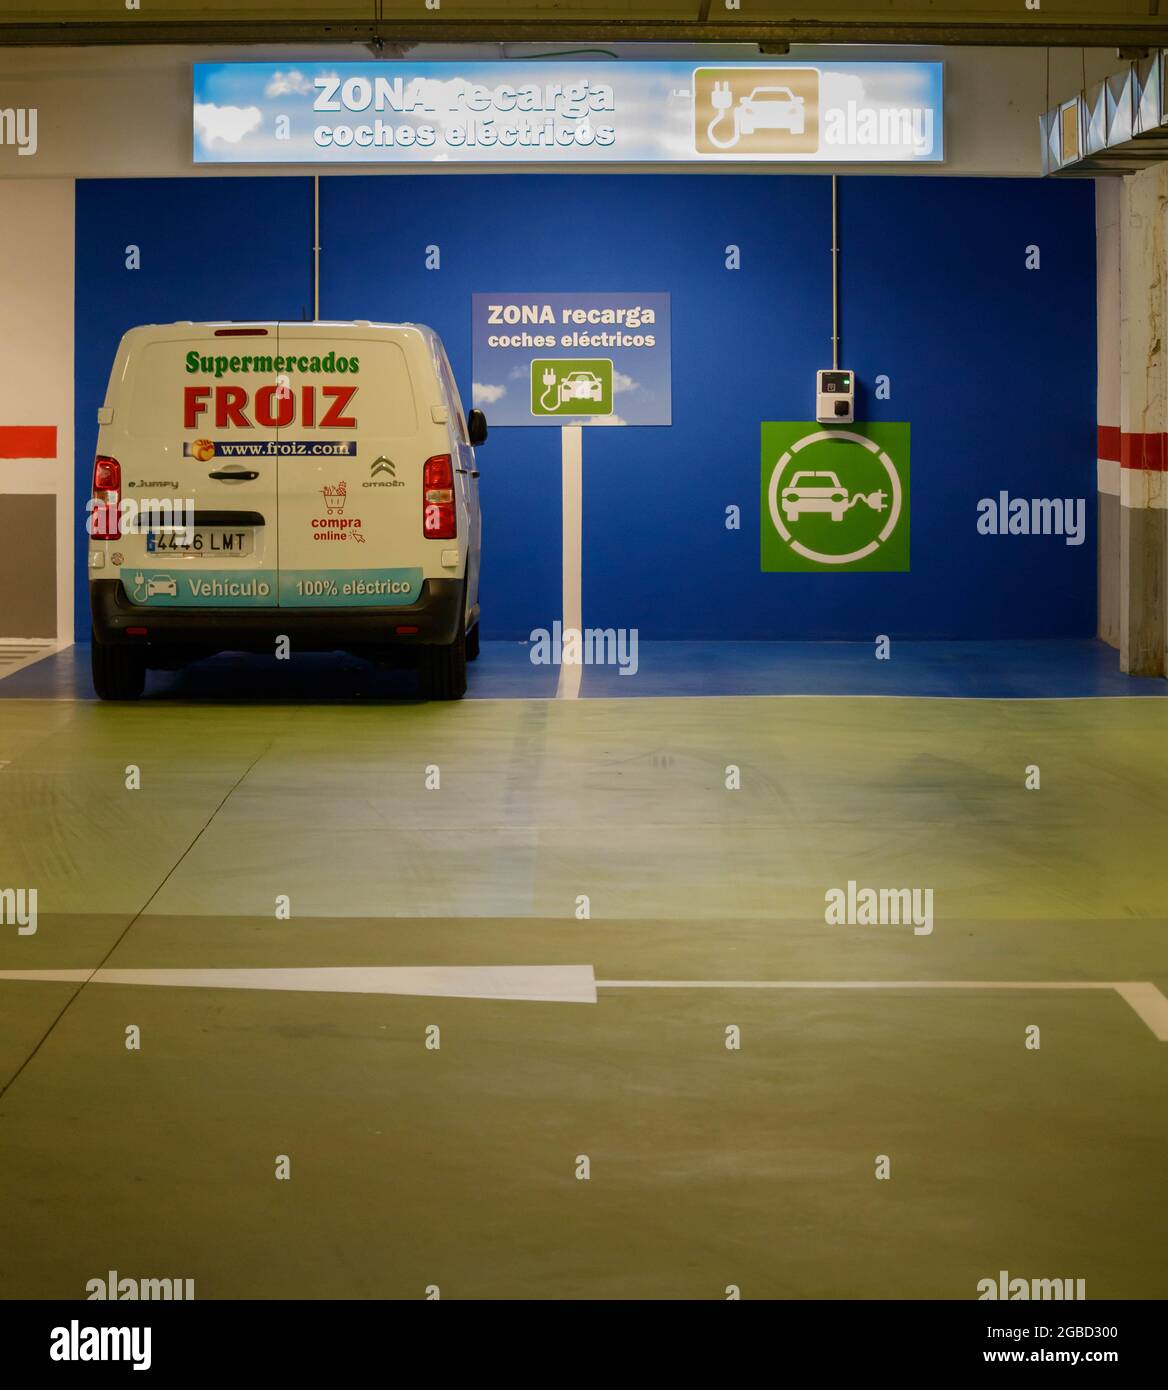 Coruna, Espagne - août 02 2021 : minibus de livraison de supermarché zéro émission branché à la station de charge de Coruna Espagne Banque D'Images